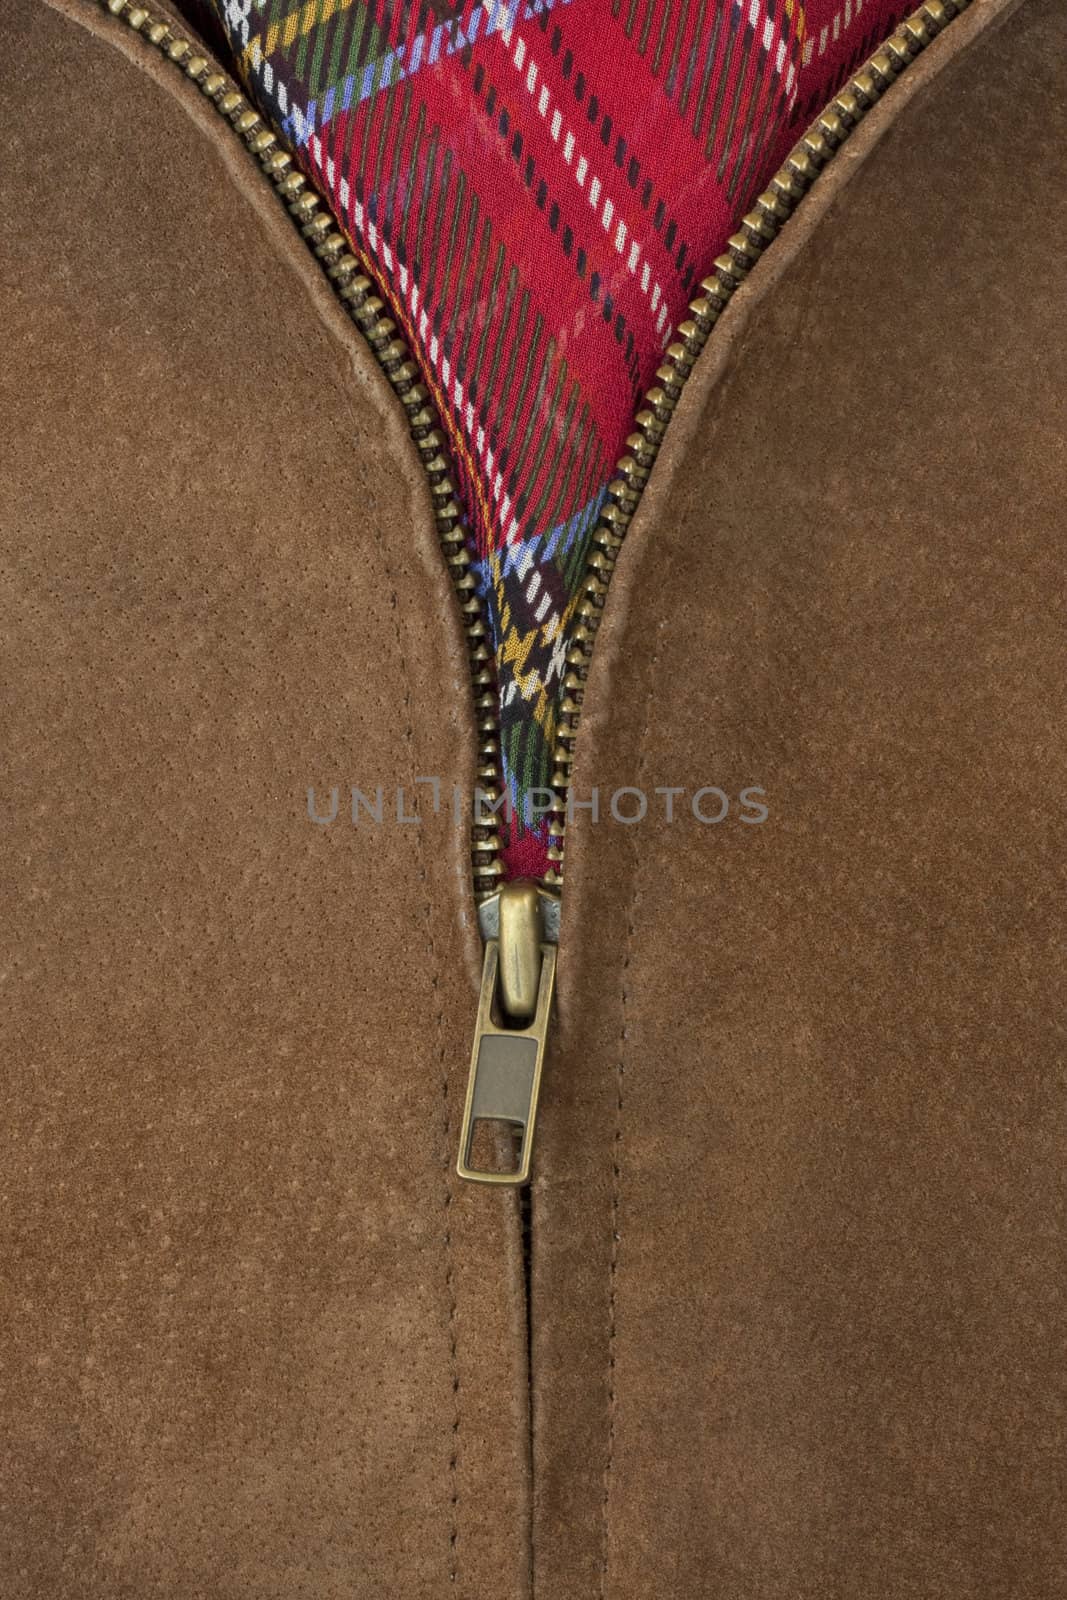 unzipped brass zipper of leather jacket by PixelsAway